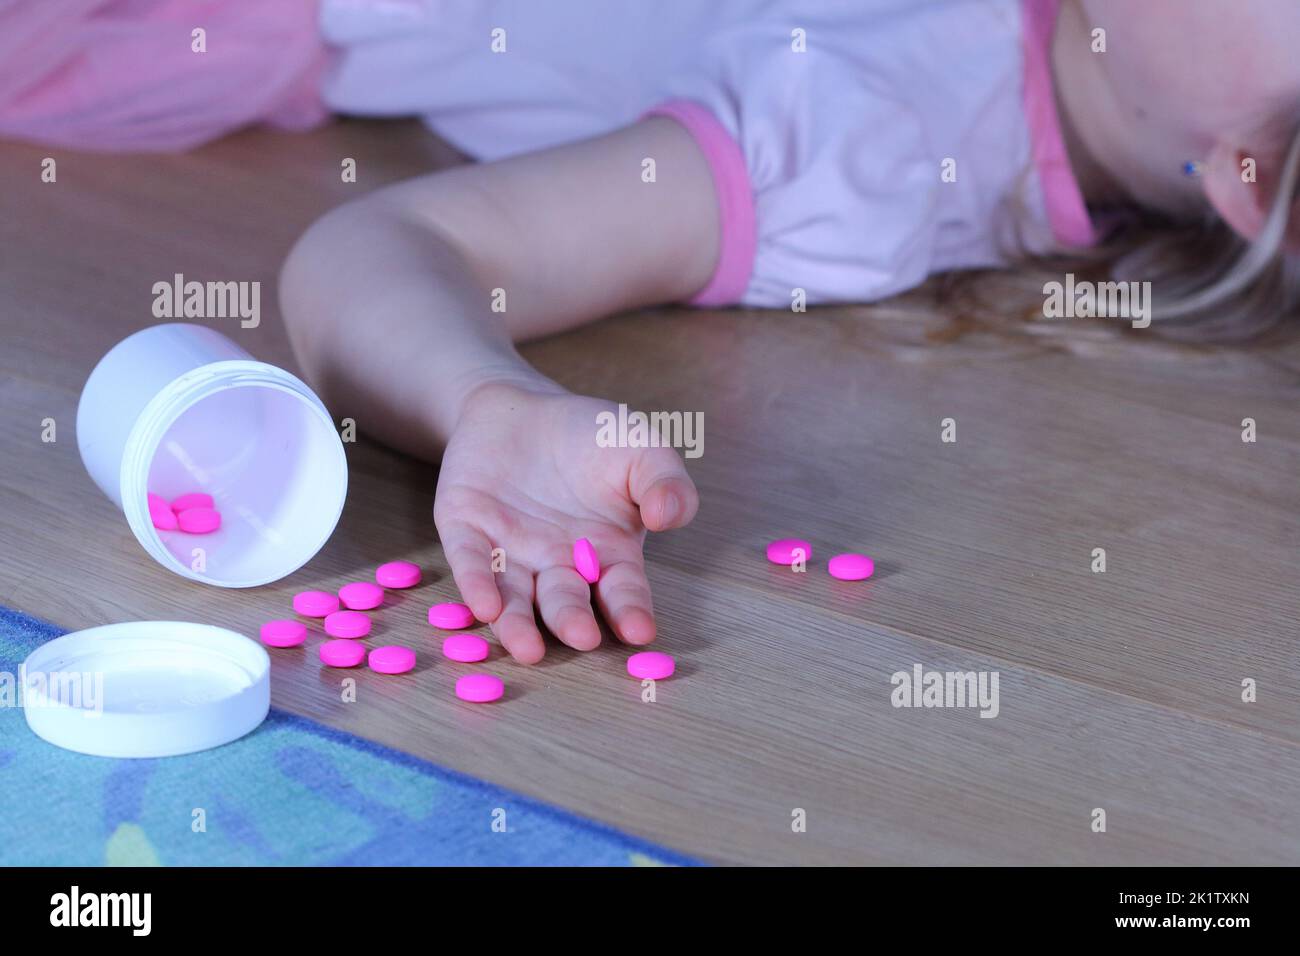 Petit enfant inconscient (fille) avec des pilules roses sur le sol à la maison. Danger d'intoxication médicamenteuse. Banque D'Images